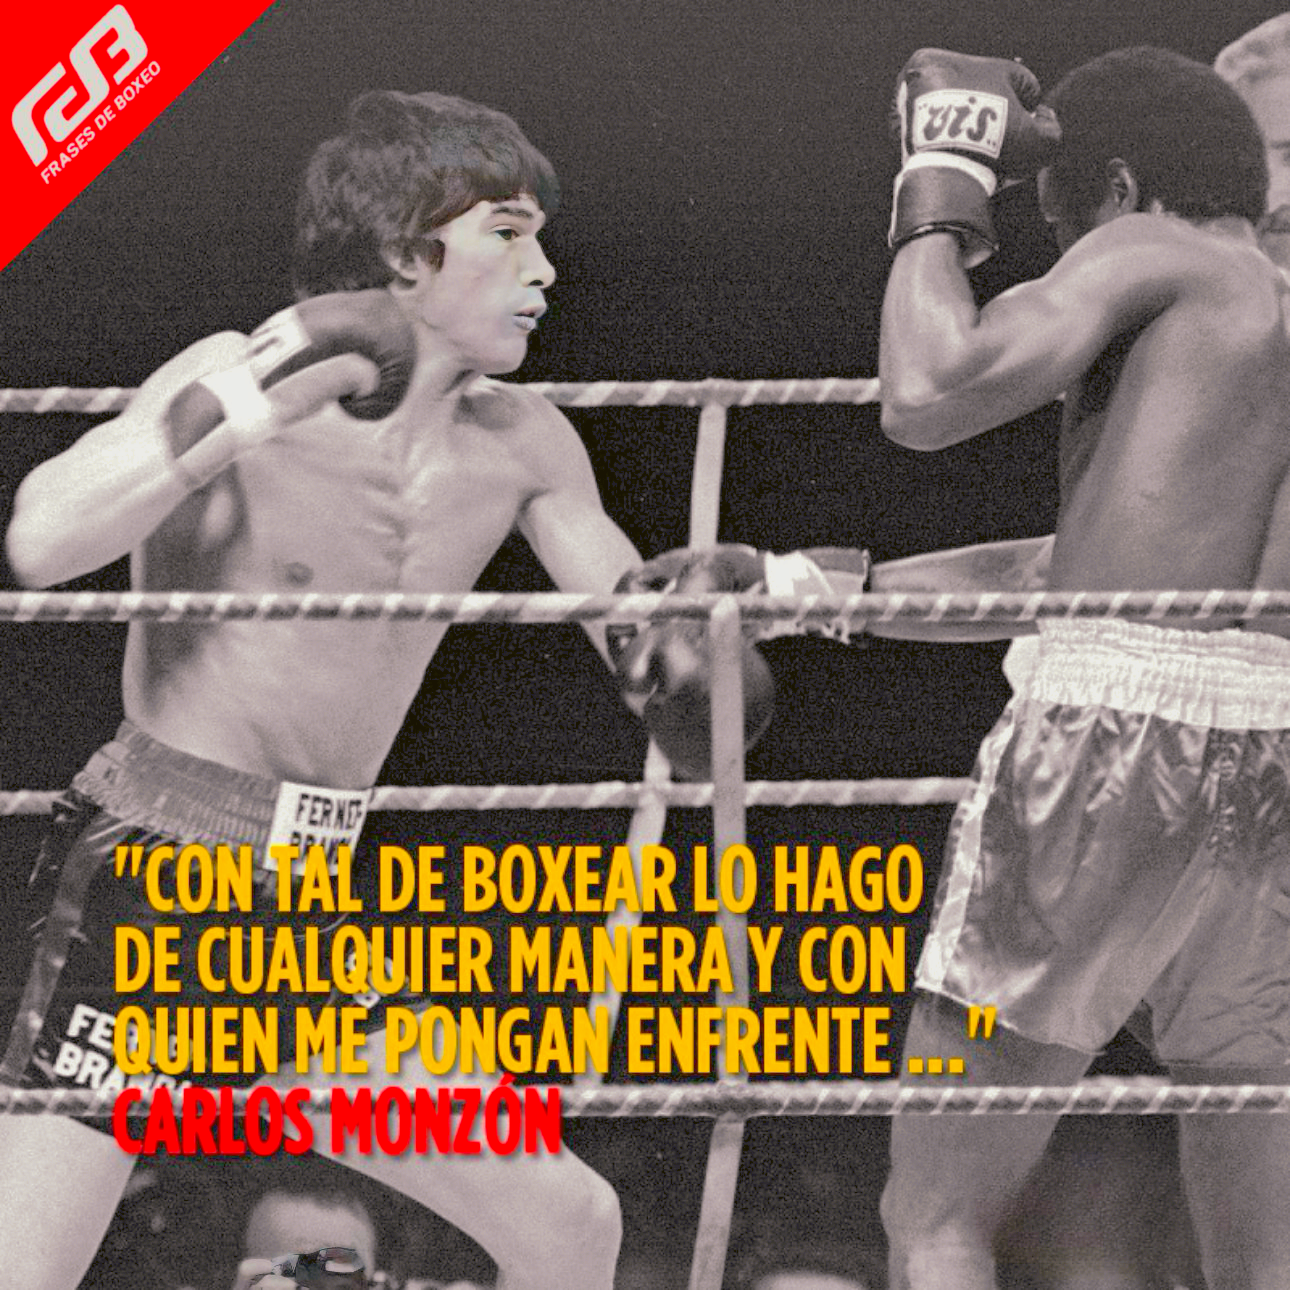 "Con tal de boxear lo hago de cualquier manera y con quien me pongan enfrente..." Carlos Monzón (Frases de Boxeo).